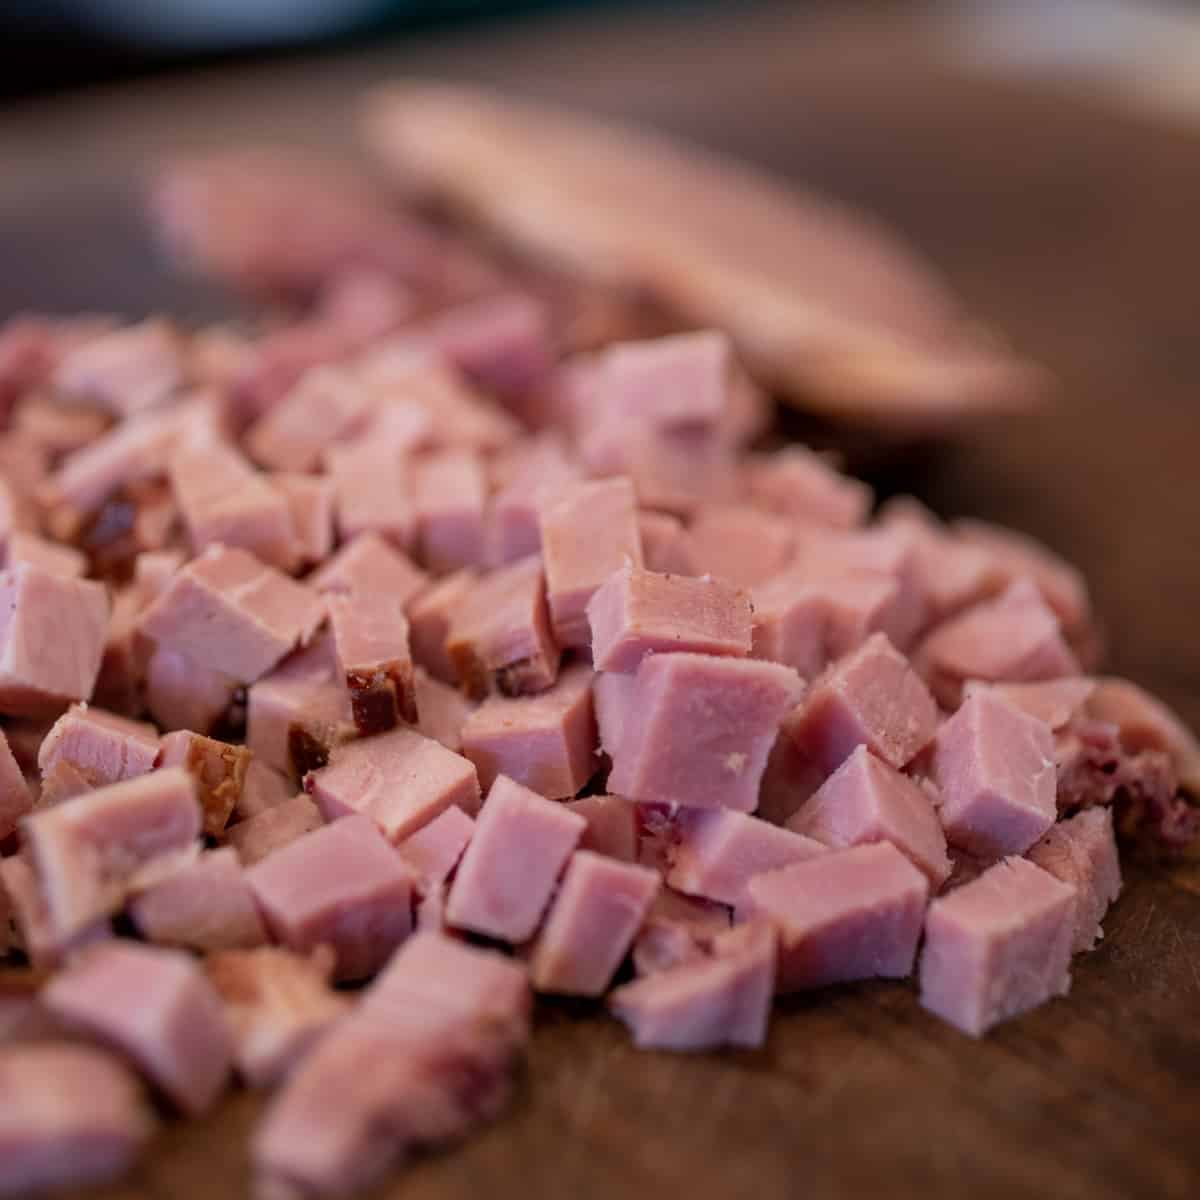 Diced ham on a cutting board.